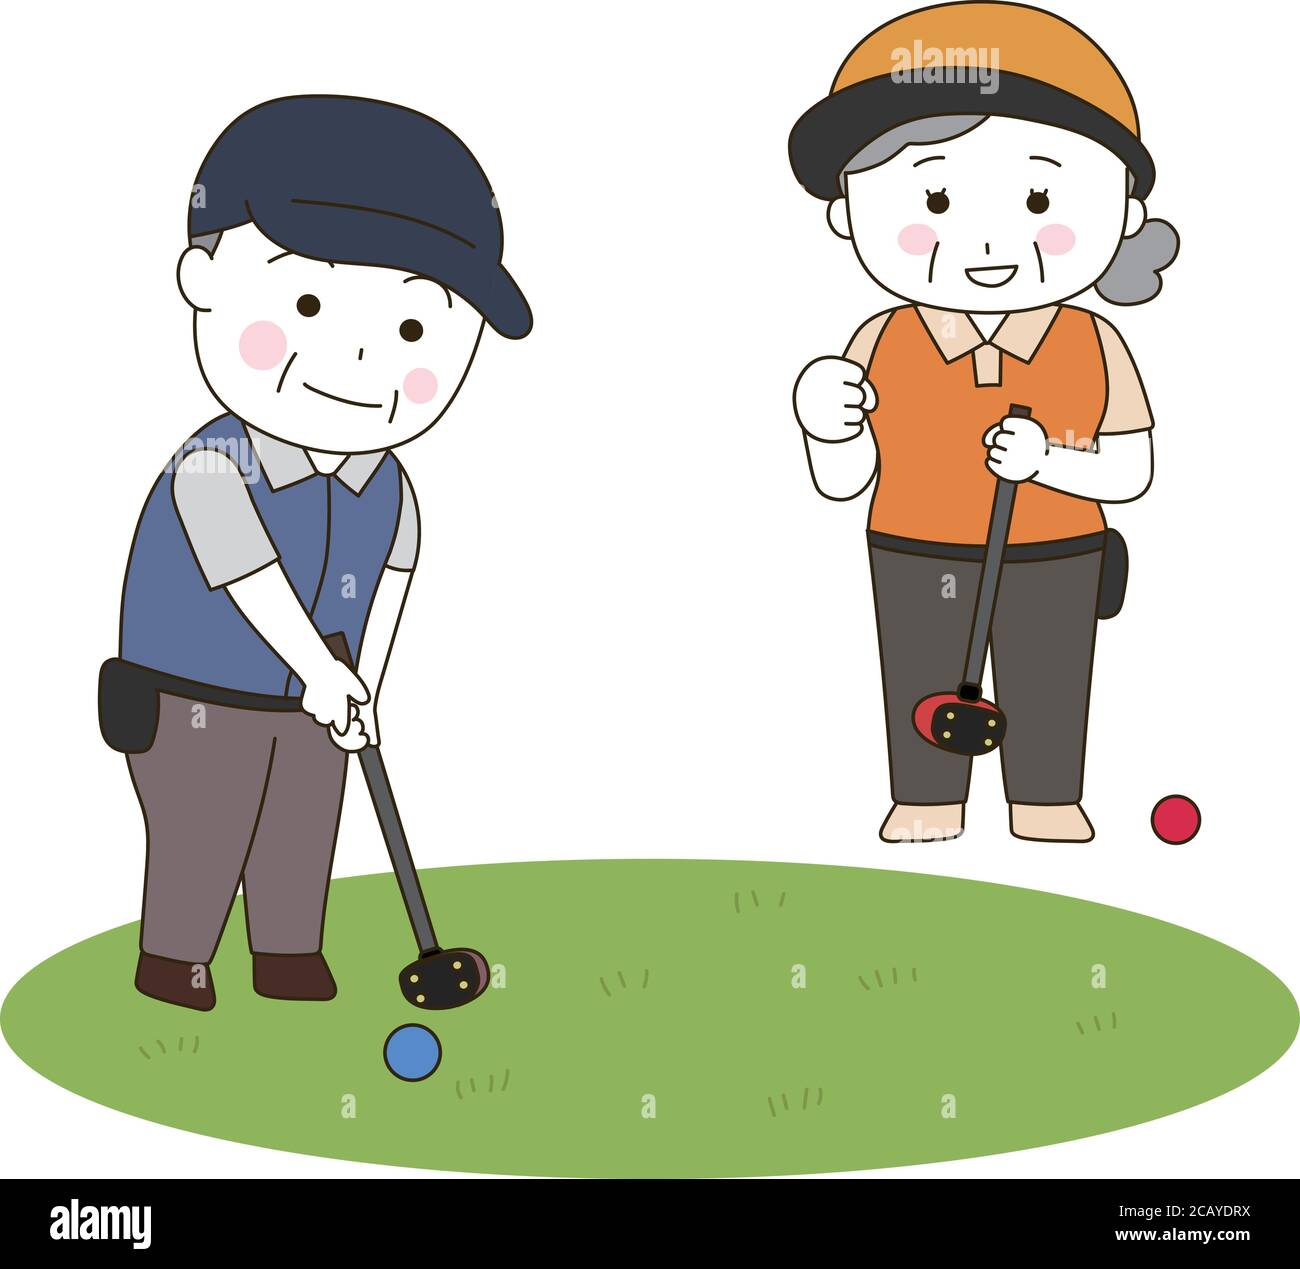 Ältere Männer und Frauen spielen einen Park Golf. Vektorgrafik isoliert auf weißem Hintergrund. Stock Vektor